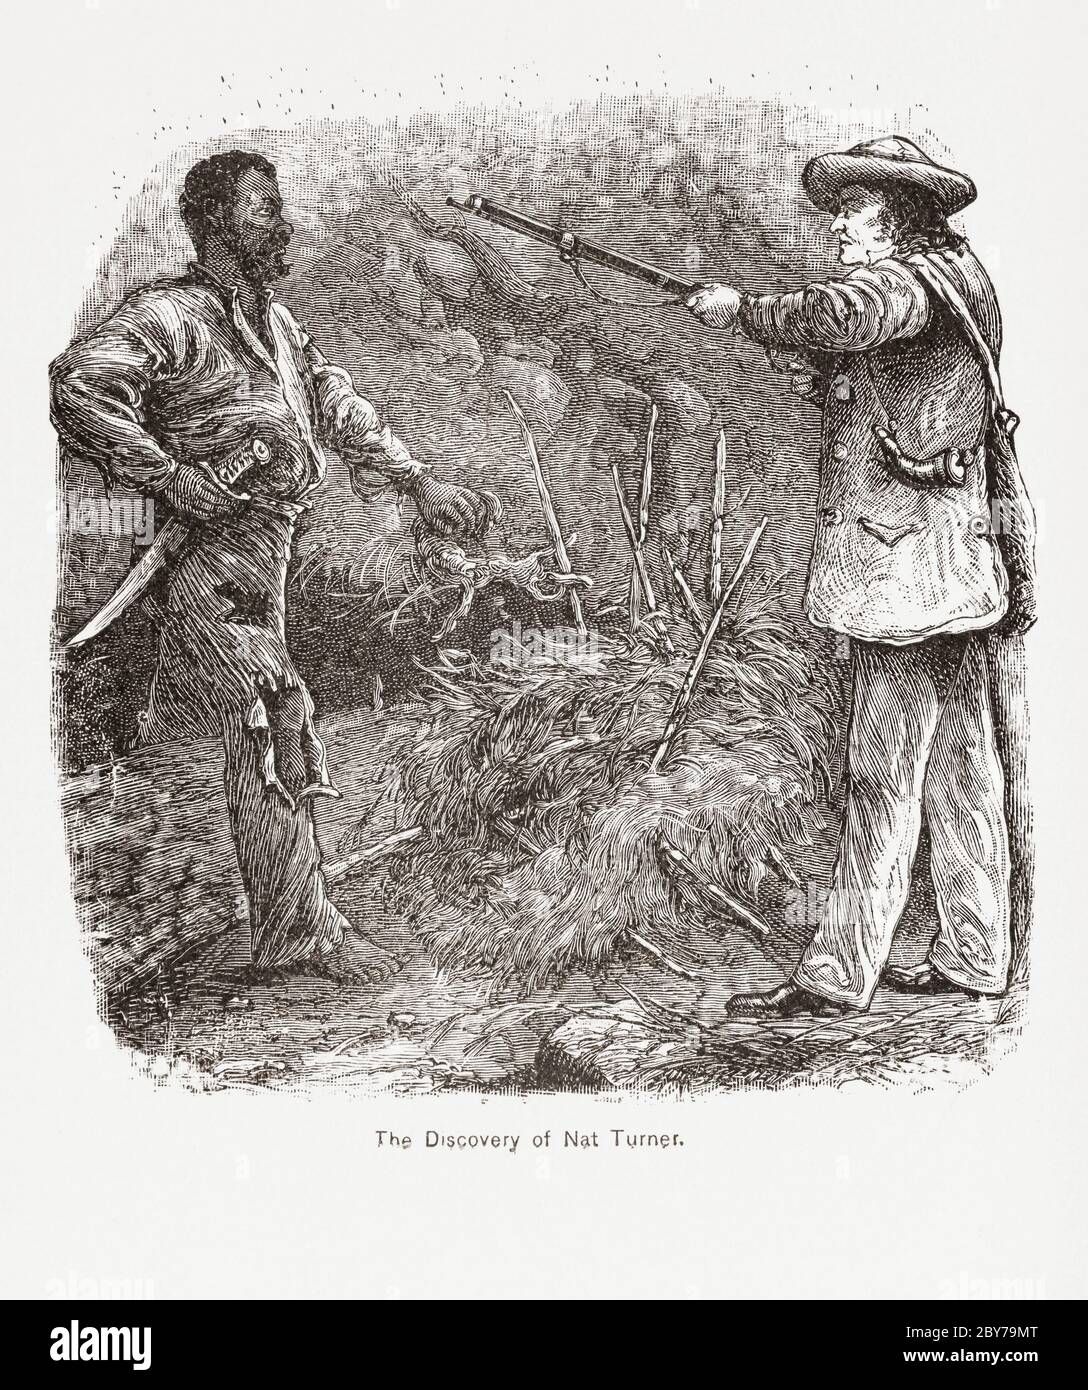 Die Eroberung von Nat Turner. NAT Turner, 1800 - 1831, war ein in die Sklaverei geborener Afroamerikaner, der eine Rebellion gegen weiße Sklavenhalter anstiftete. Nach dem Scheitern des Aufstandes wurde er aufgehängt. Nach einer Illustration aus dem 19. Jahrhundert. Stockfoto